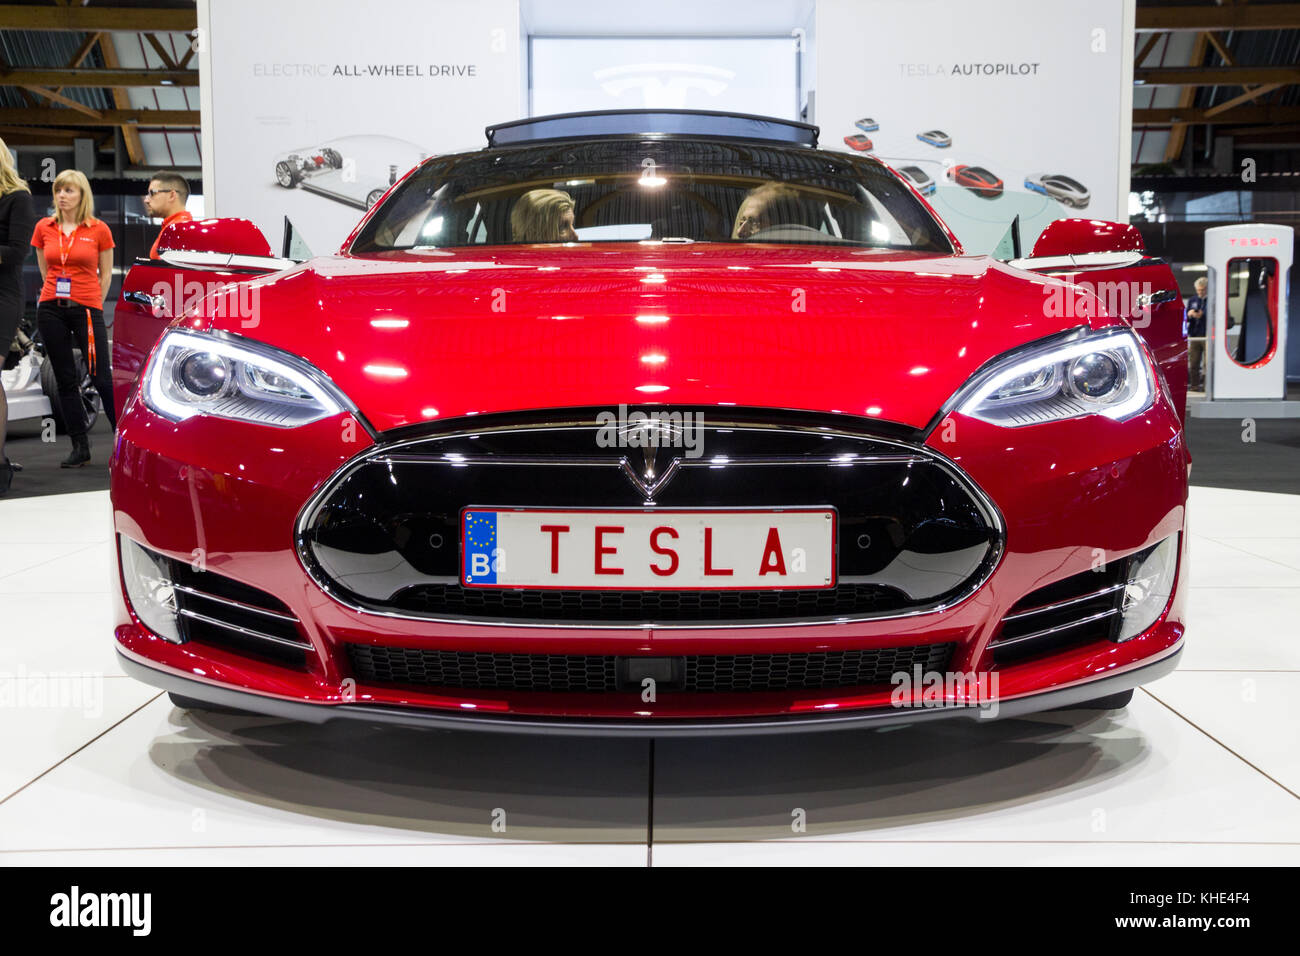 BRUXELLES - 12 GENNAIO 2016: Auto elettrica Tesla Model S presentata al Salone dell'automobile di Bruxelles. Foto Stock